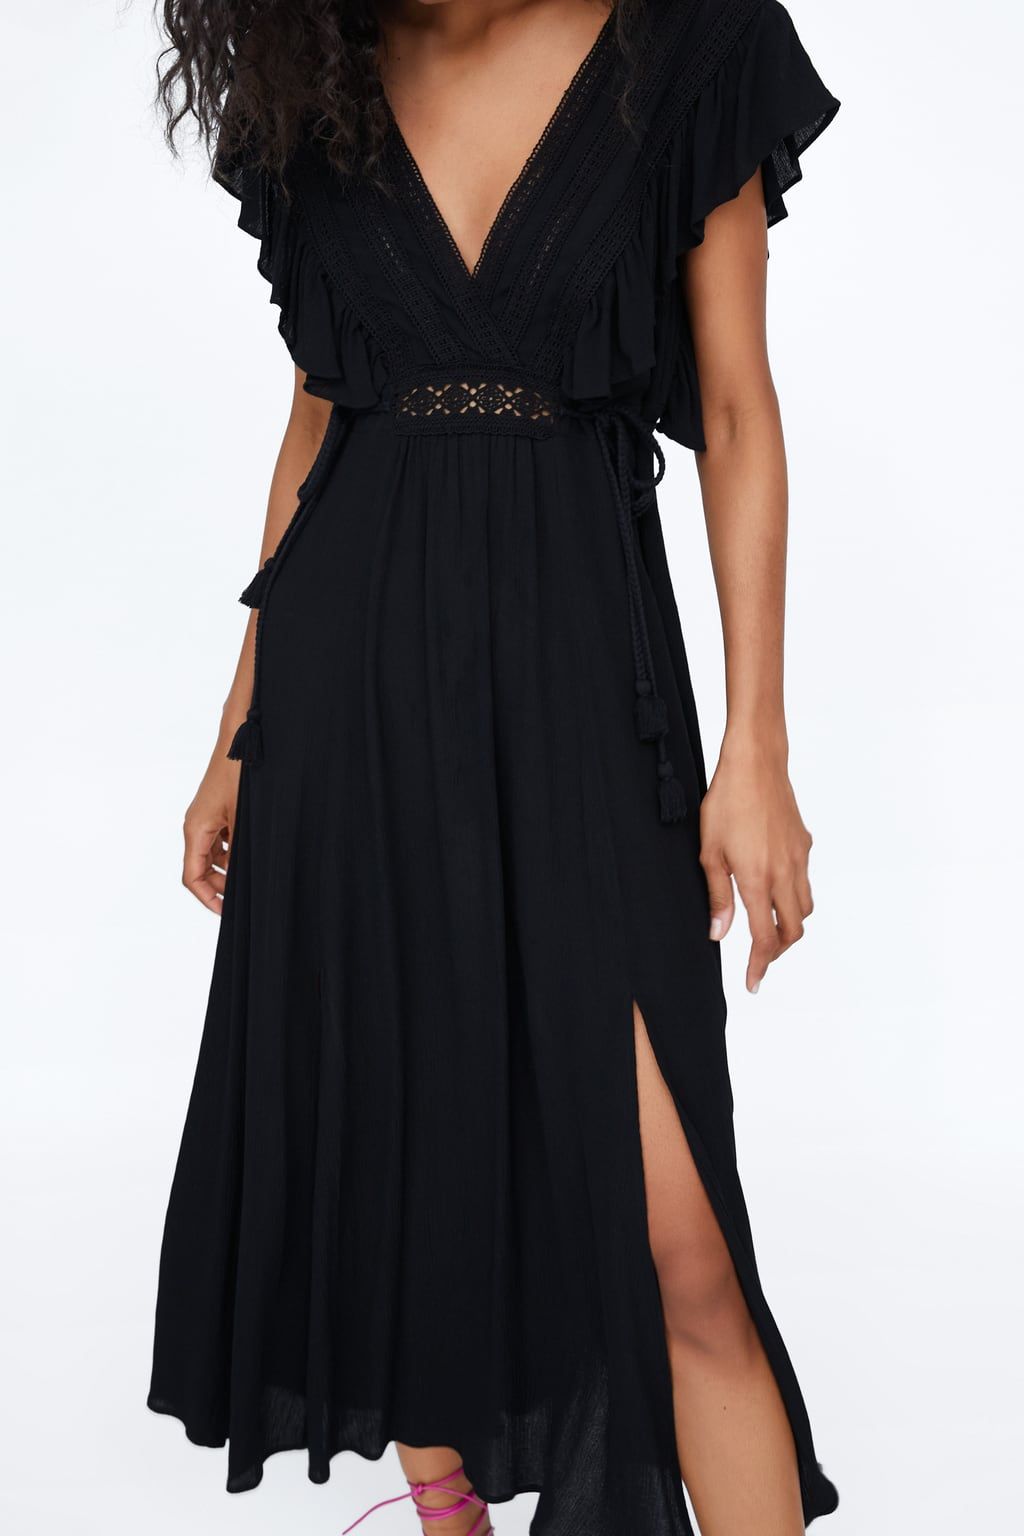 El vestidazo negro de Zara que cumple los buscabas para este verano